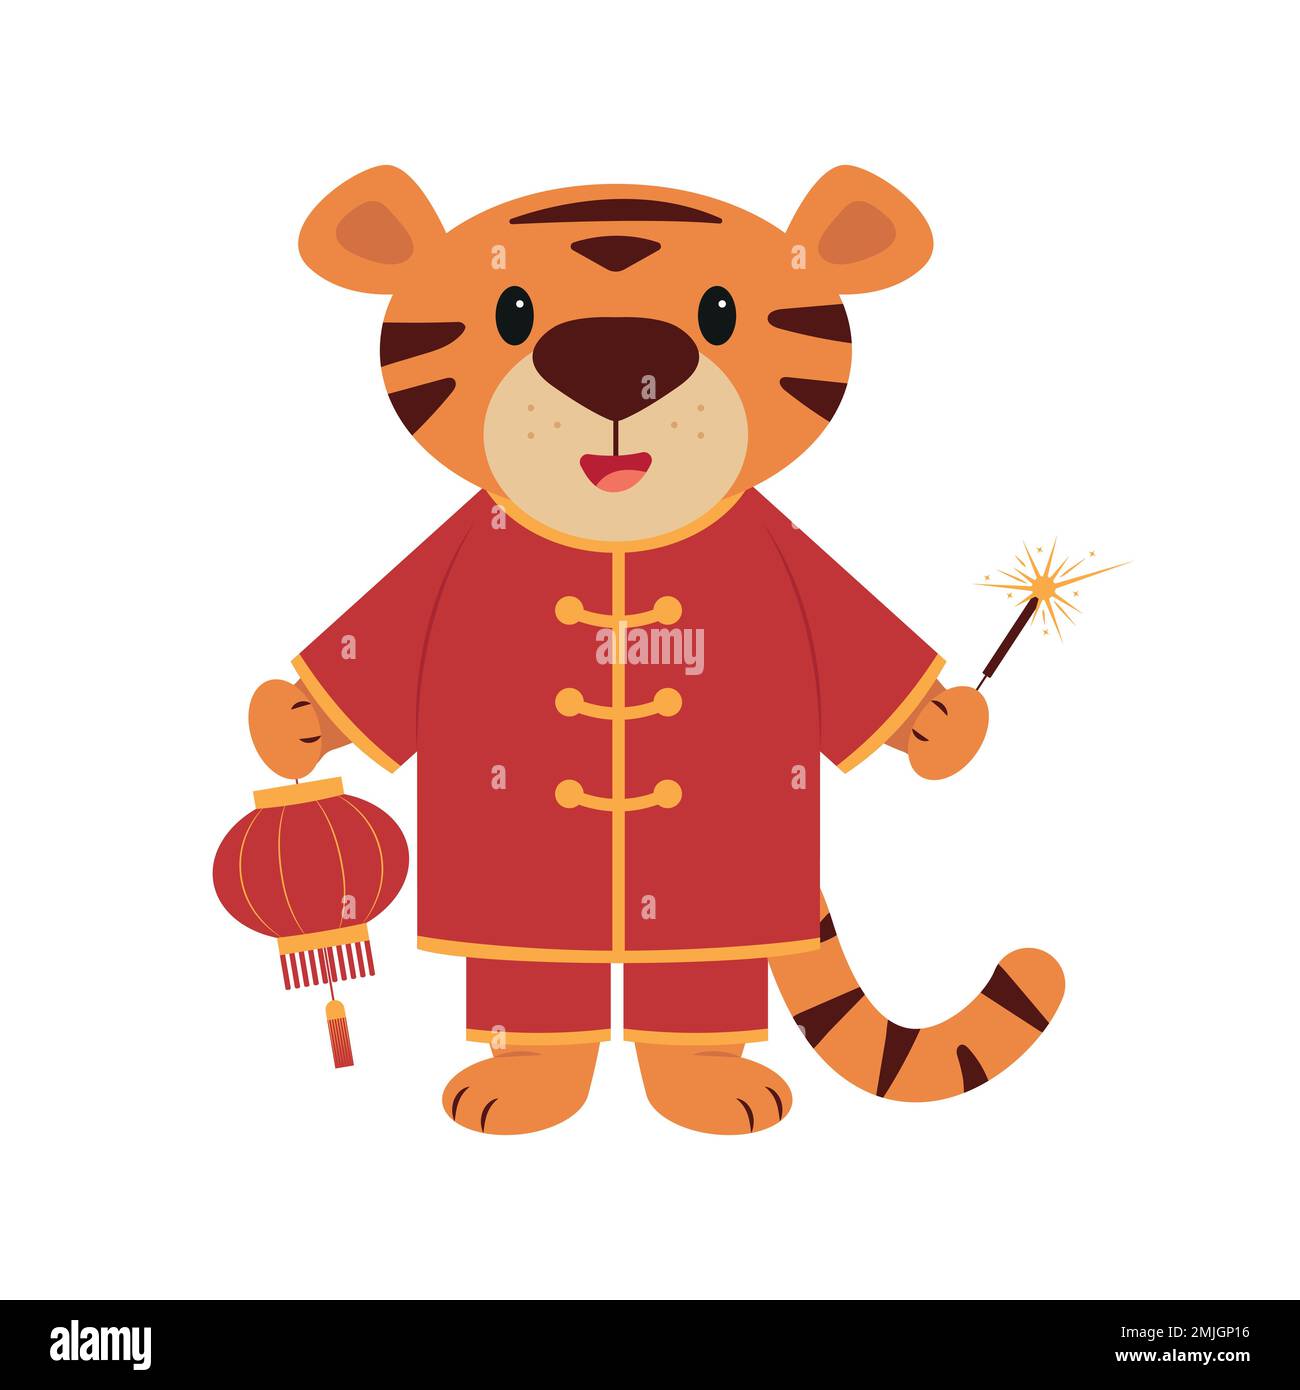 Le symbole de la nouvelle année chinoise est le CUB tigre en costume rouge avec lanterne chinoise et sparkler. Personnage de dessin animé de style plat. Vecteur. Illustration de Vecteur